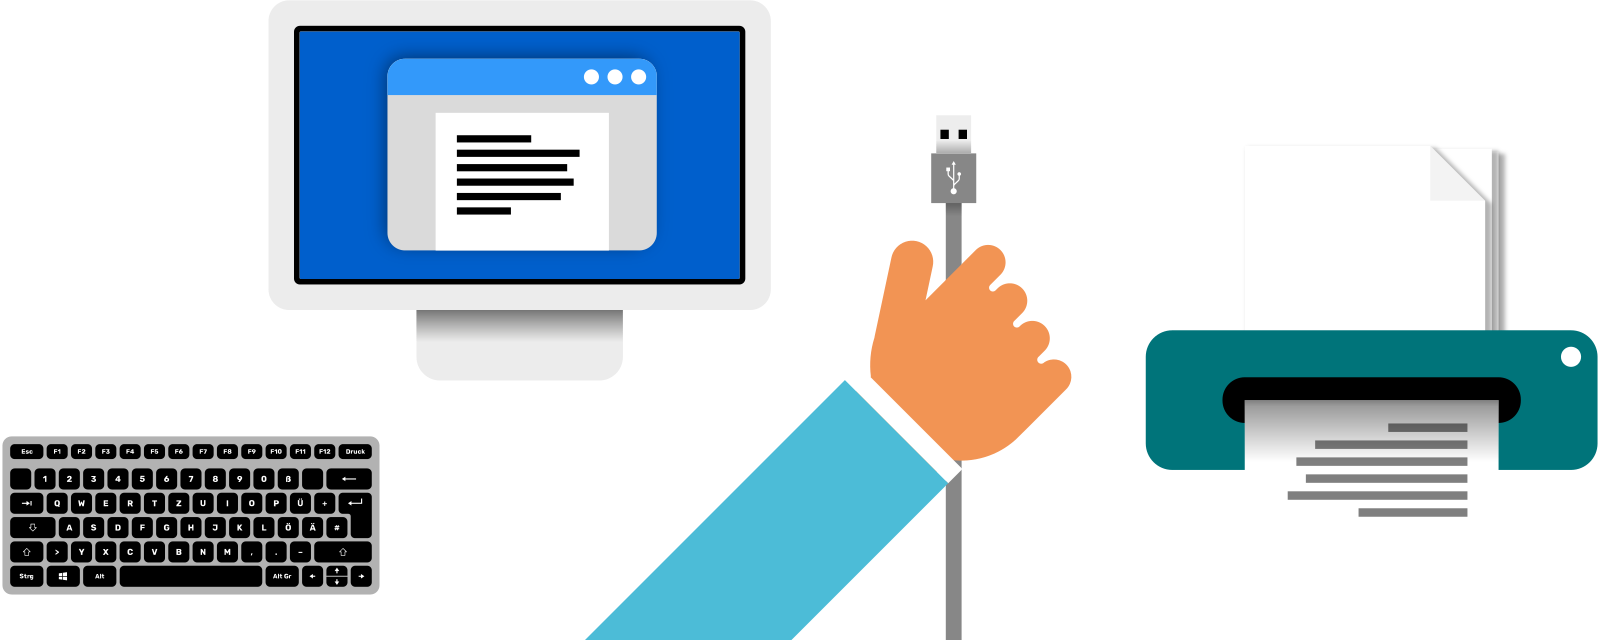 Ein Computer mit einer geöffneten Textdatei. Eine Hand hält ein USB-Kabel, daneben befindet sich ein Drucker.